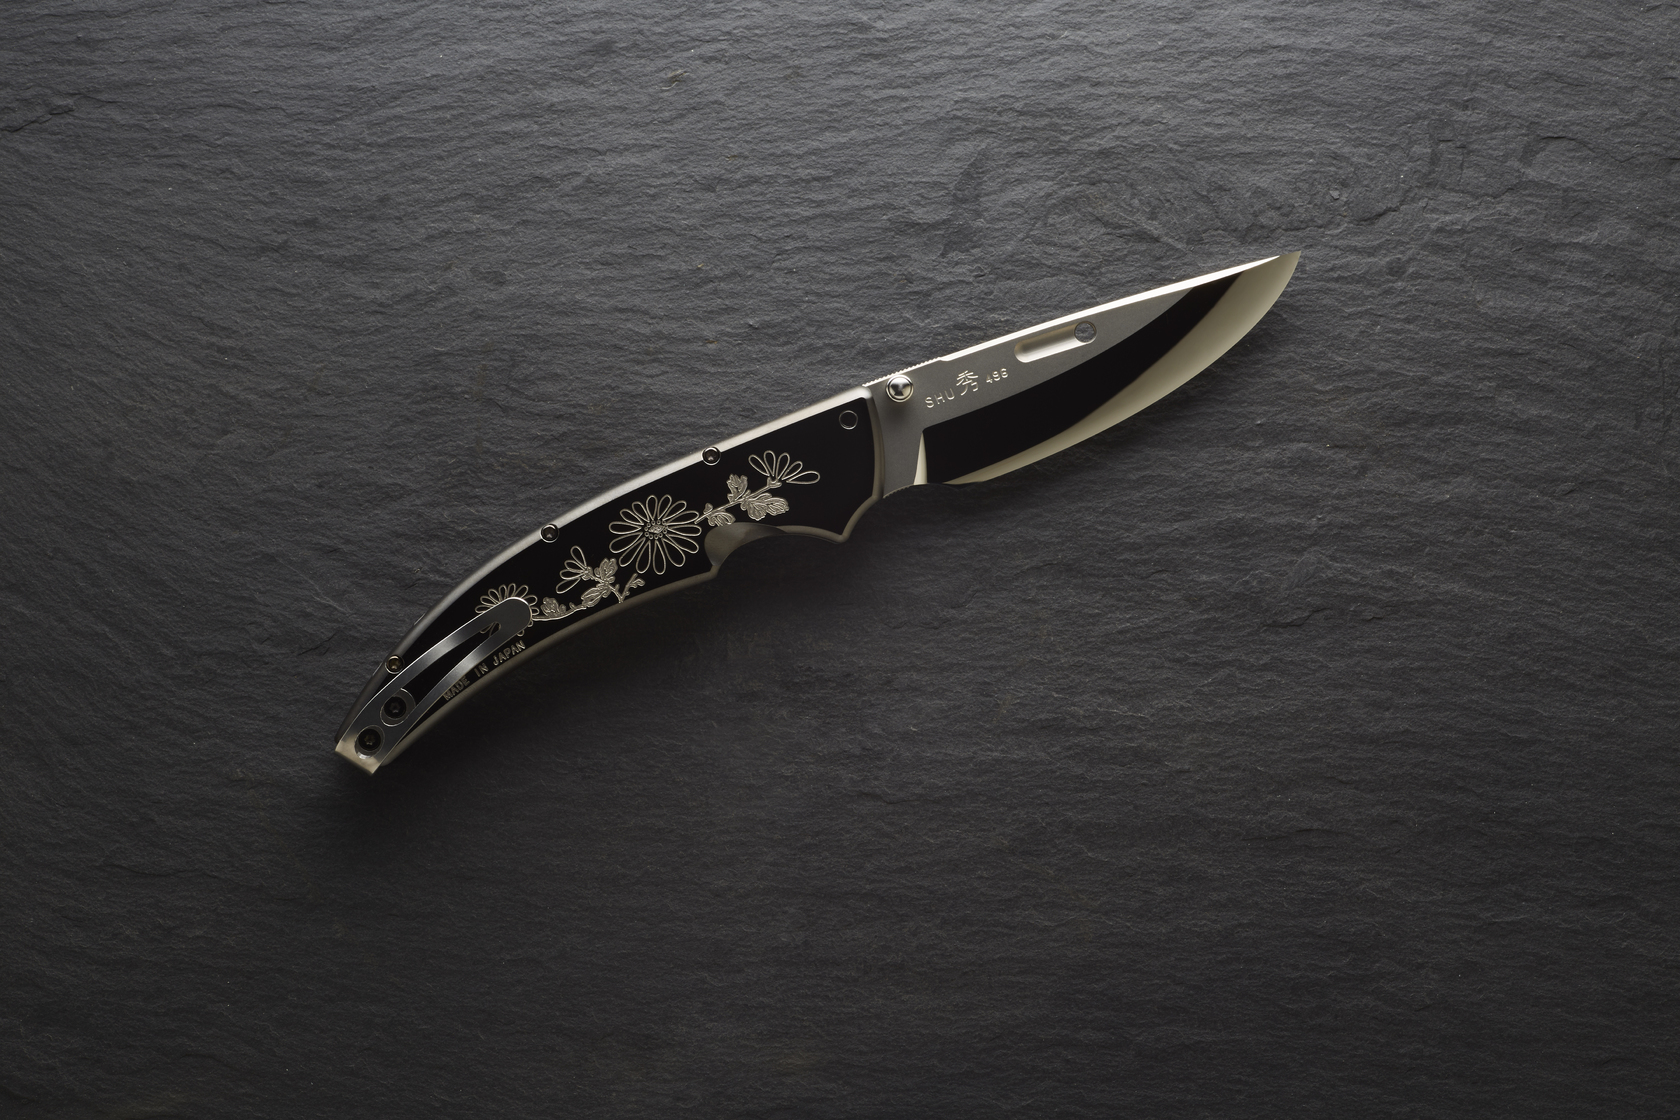 Нож Rockstead SHU ZDP (KIKU) купить по оптимальной цене,  доставка по России, гарантия качества